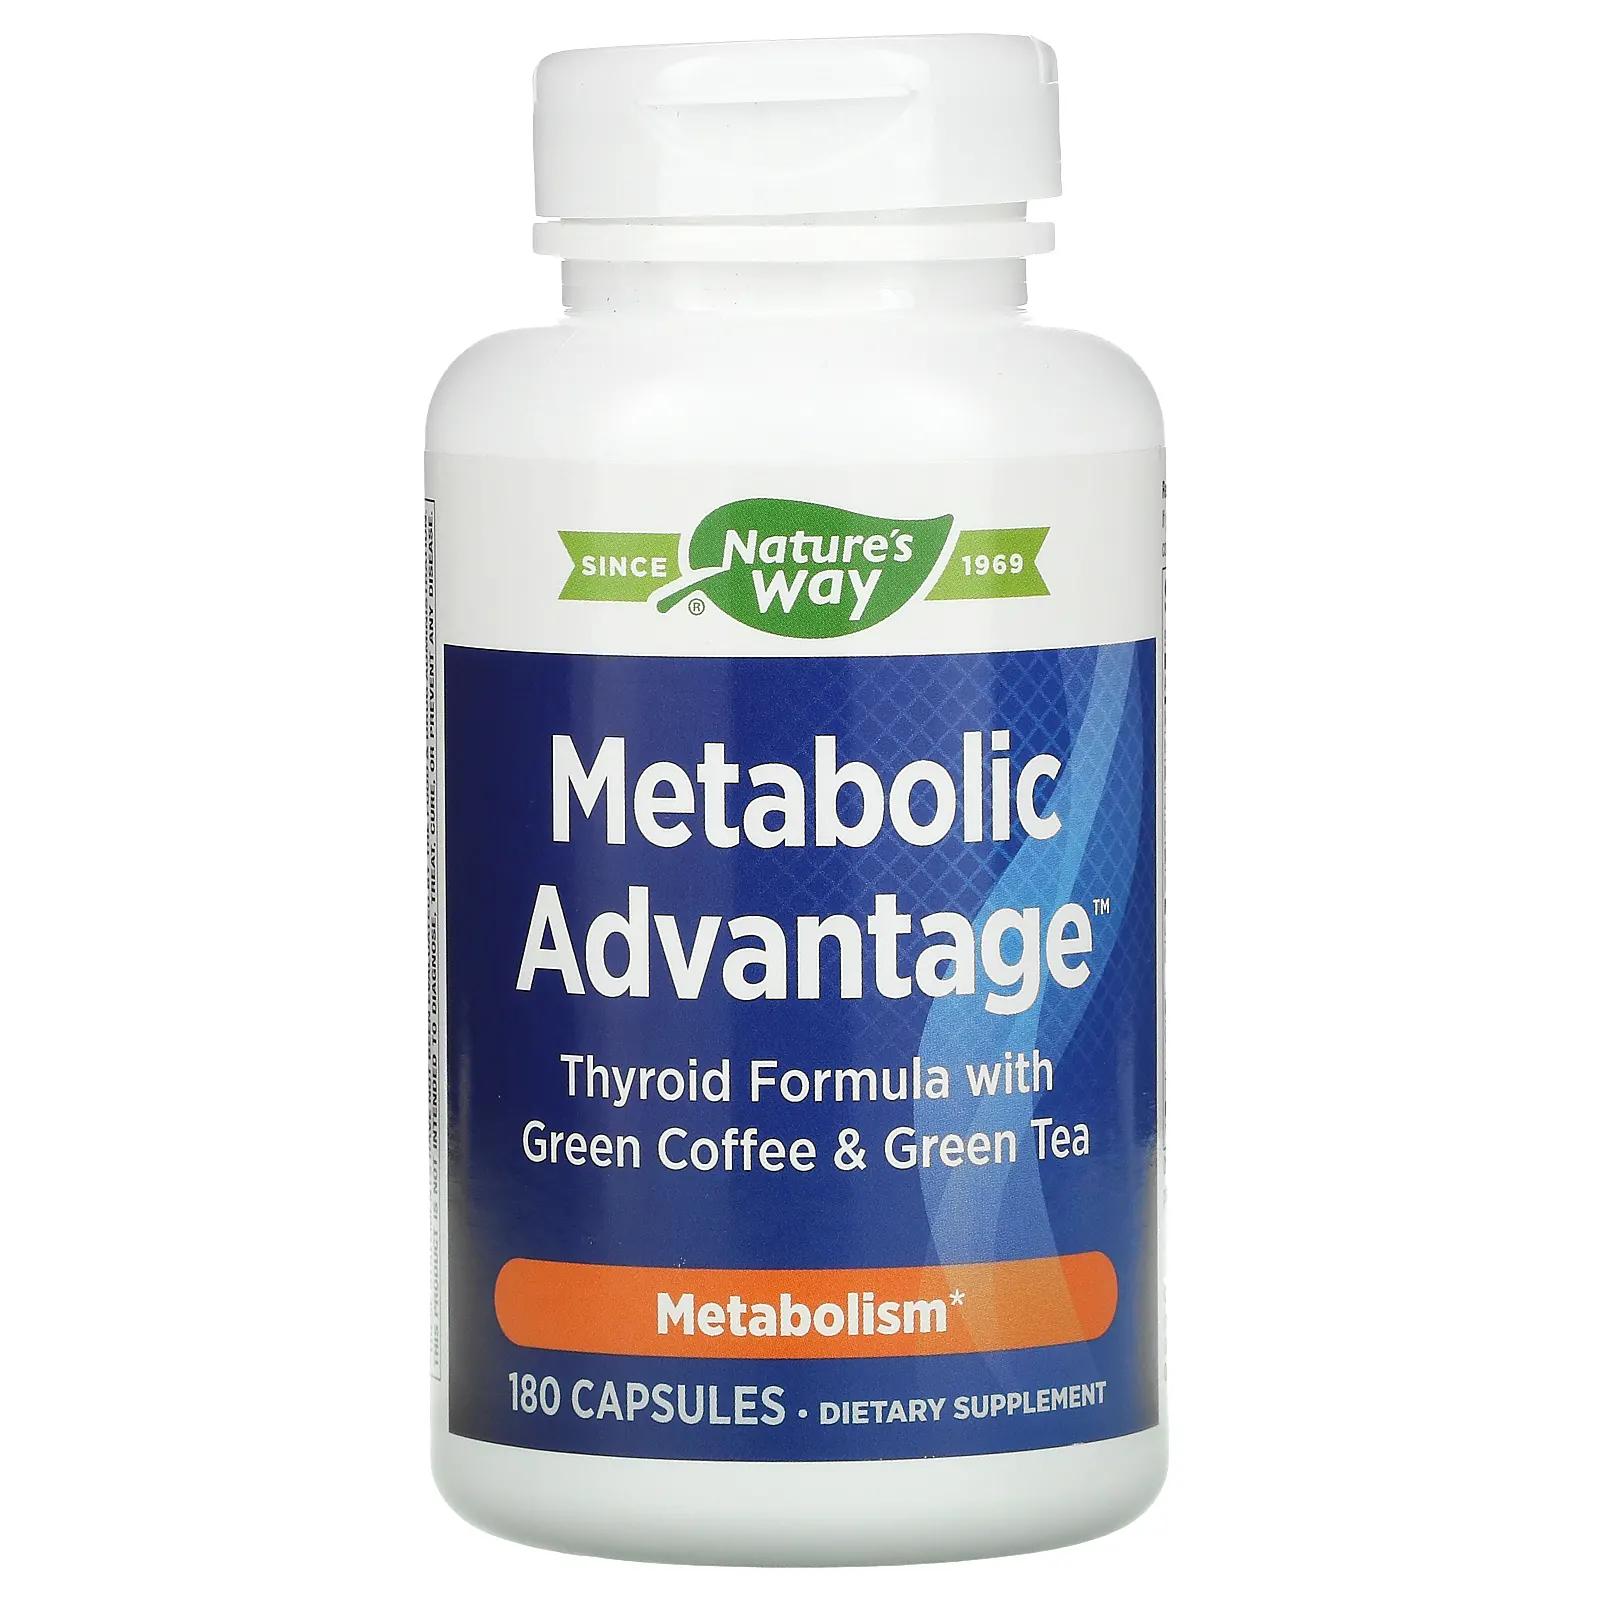 Nature's Way Metabolic Advantage формула для щитовидной железы с зеленым кофе и зеленым чаем метаболизм 180 капсул